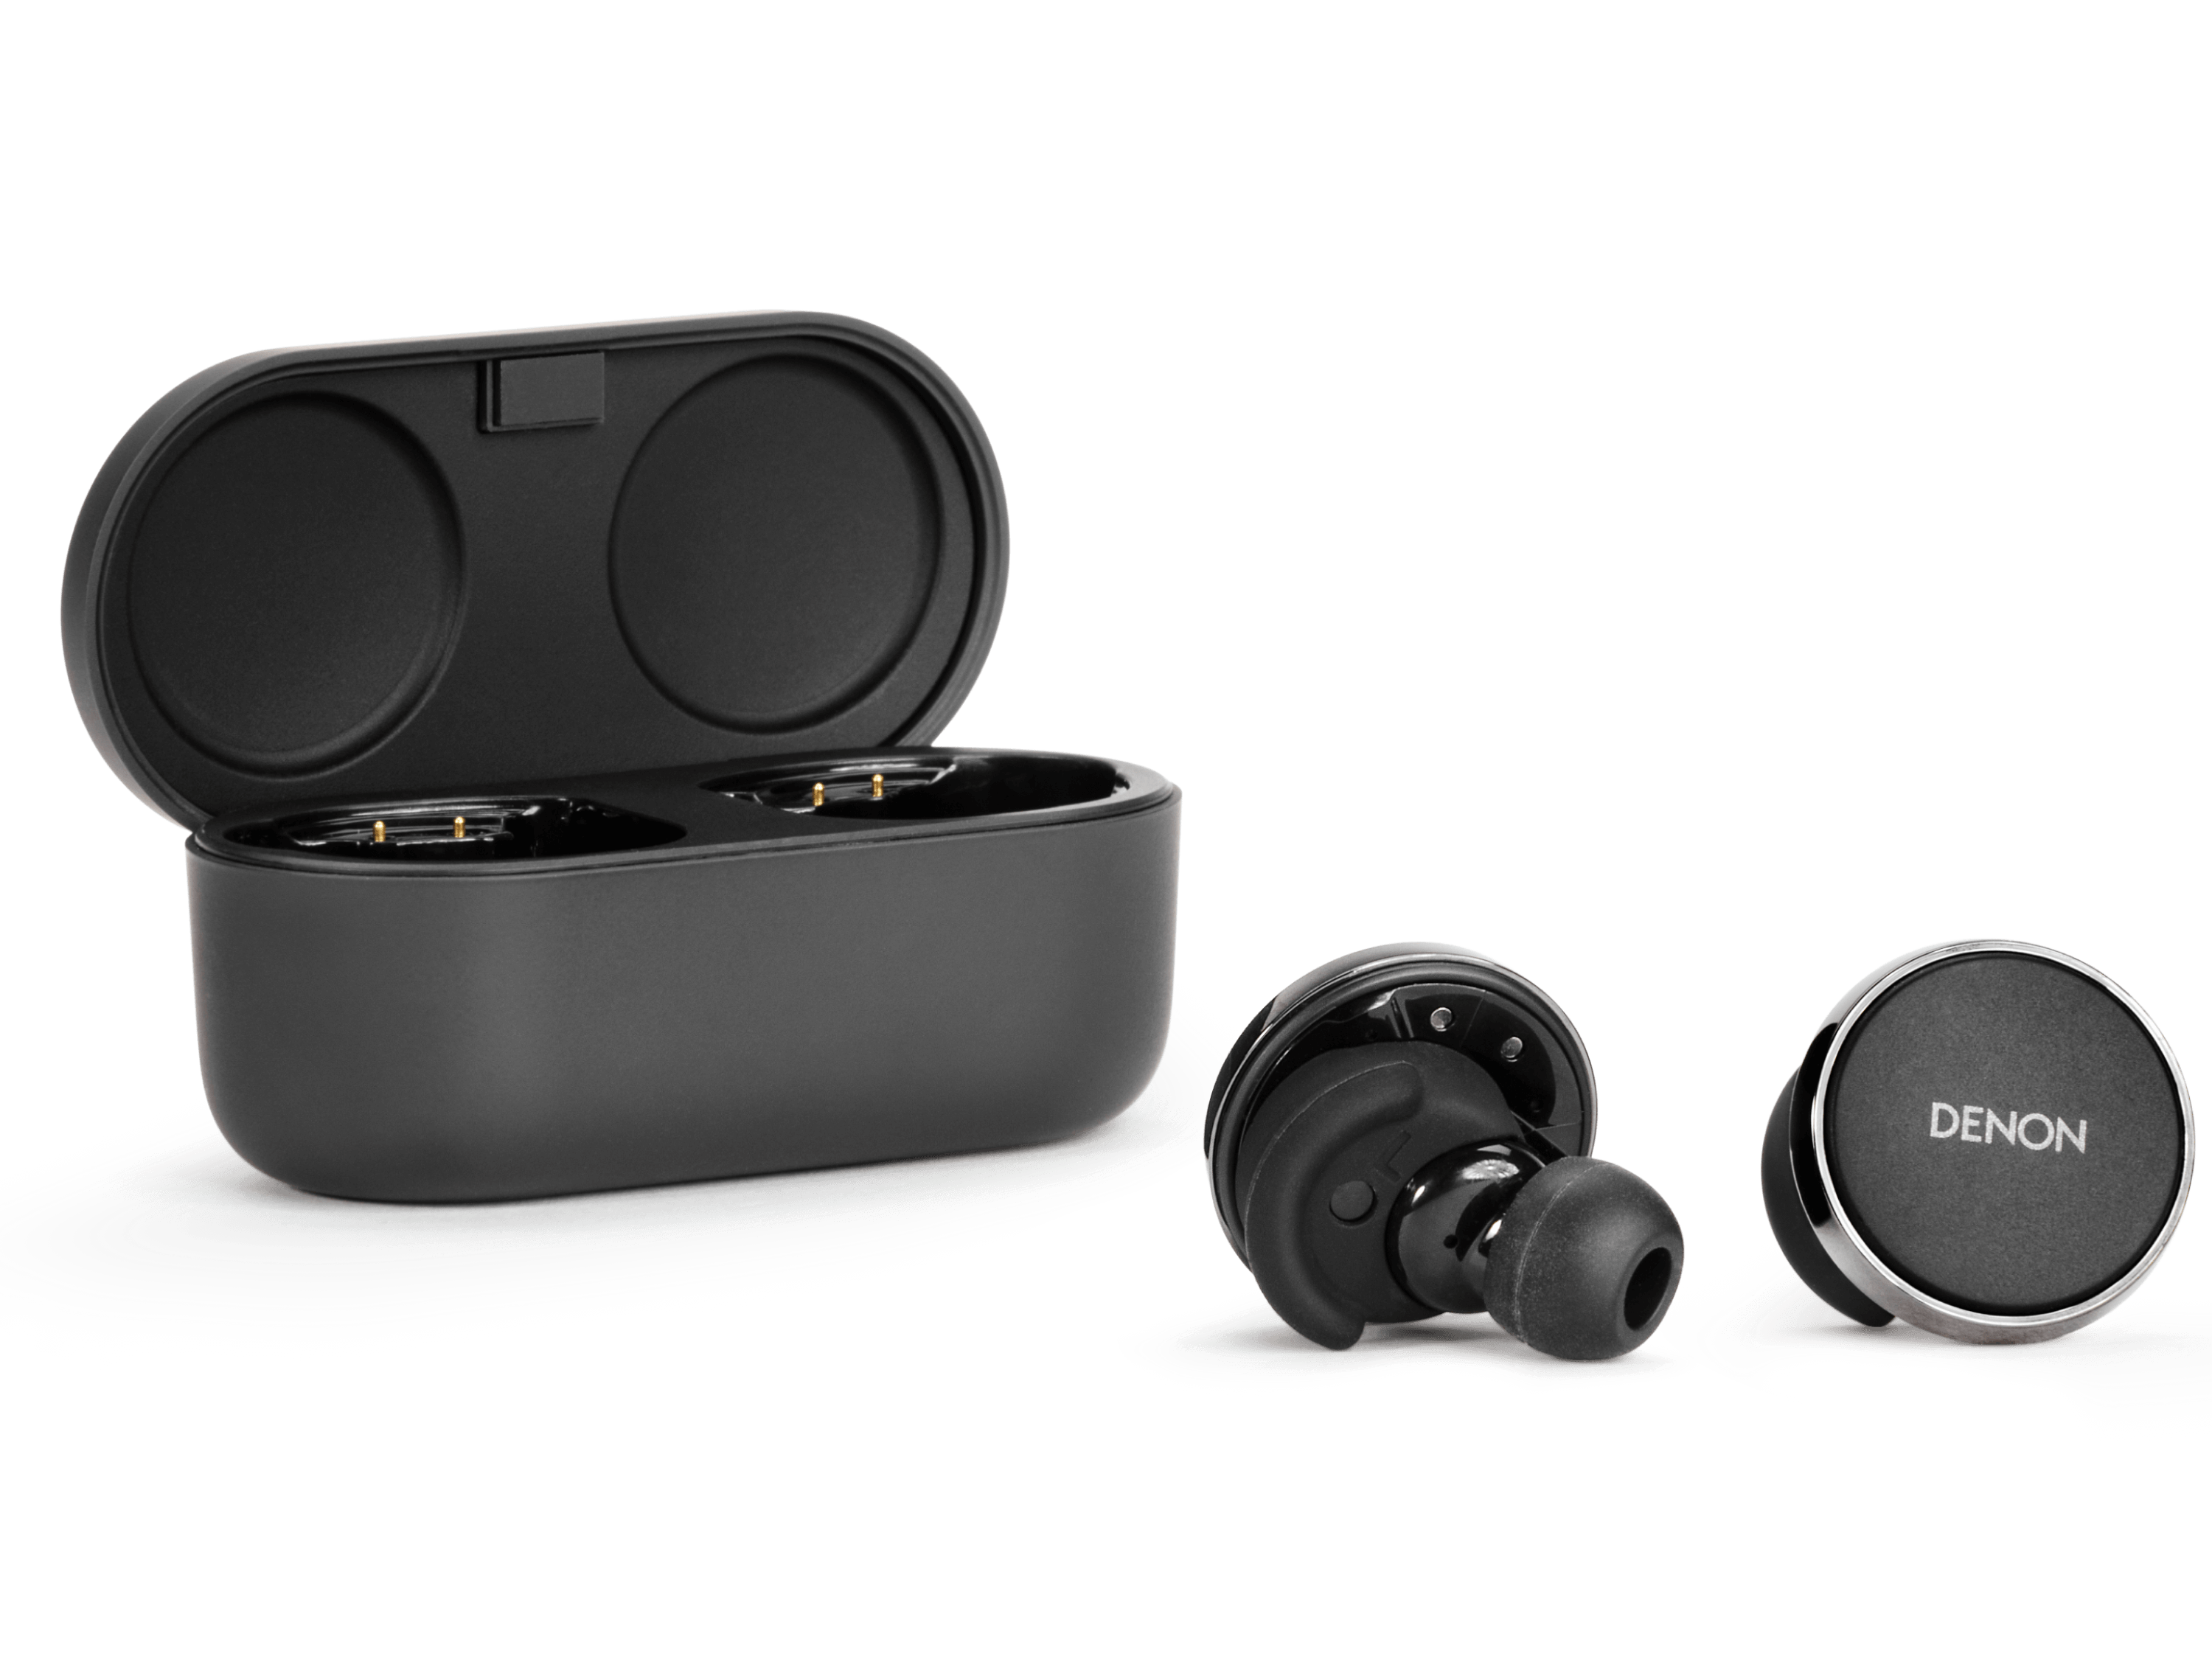 Denon PerL Pro - Premium True Wireless earbuds with 